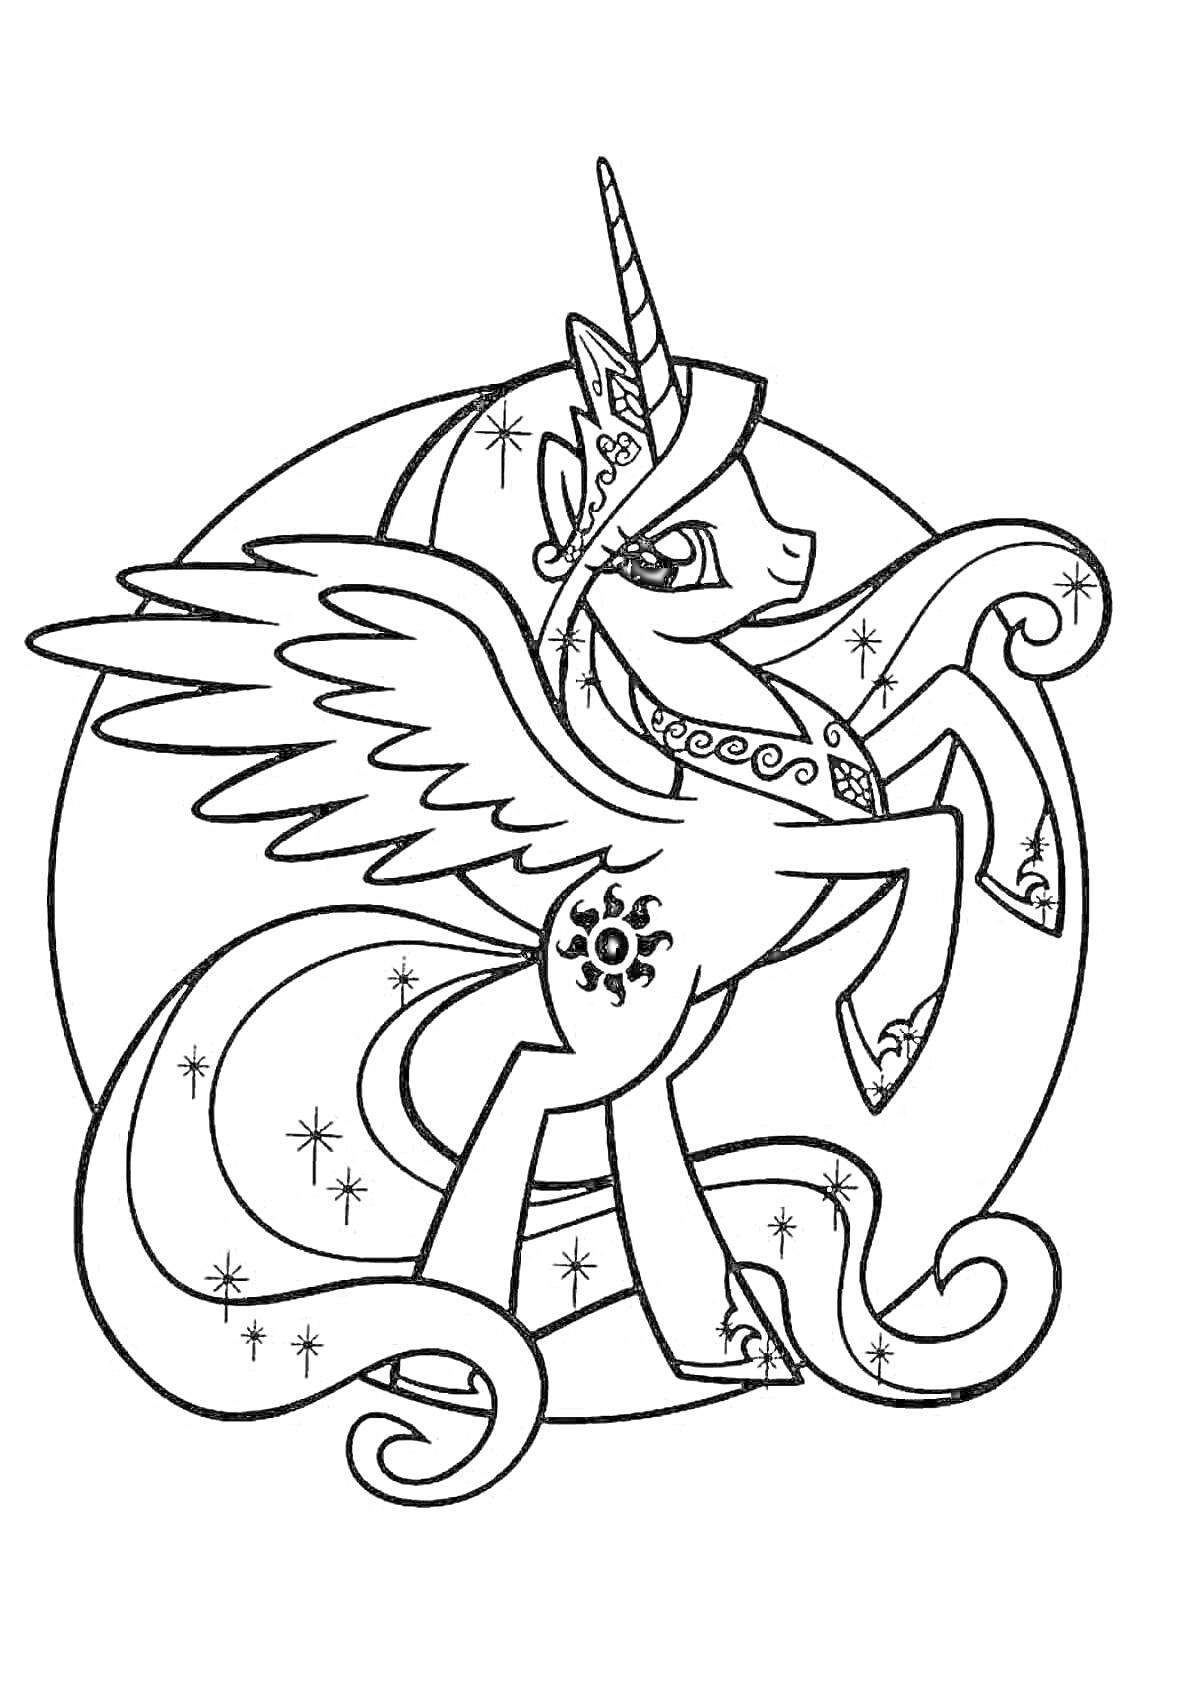 Раскраска Пони принцесса Селестия с крыльями, короной, рогом и символом солнца на боку, стоящая на задних ногах в круге со звездами